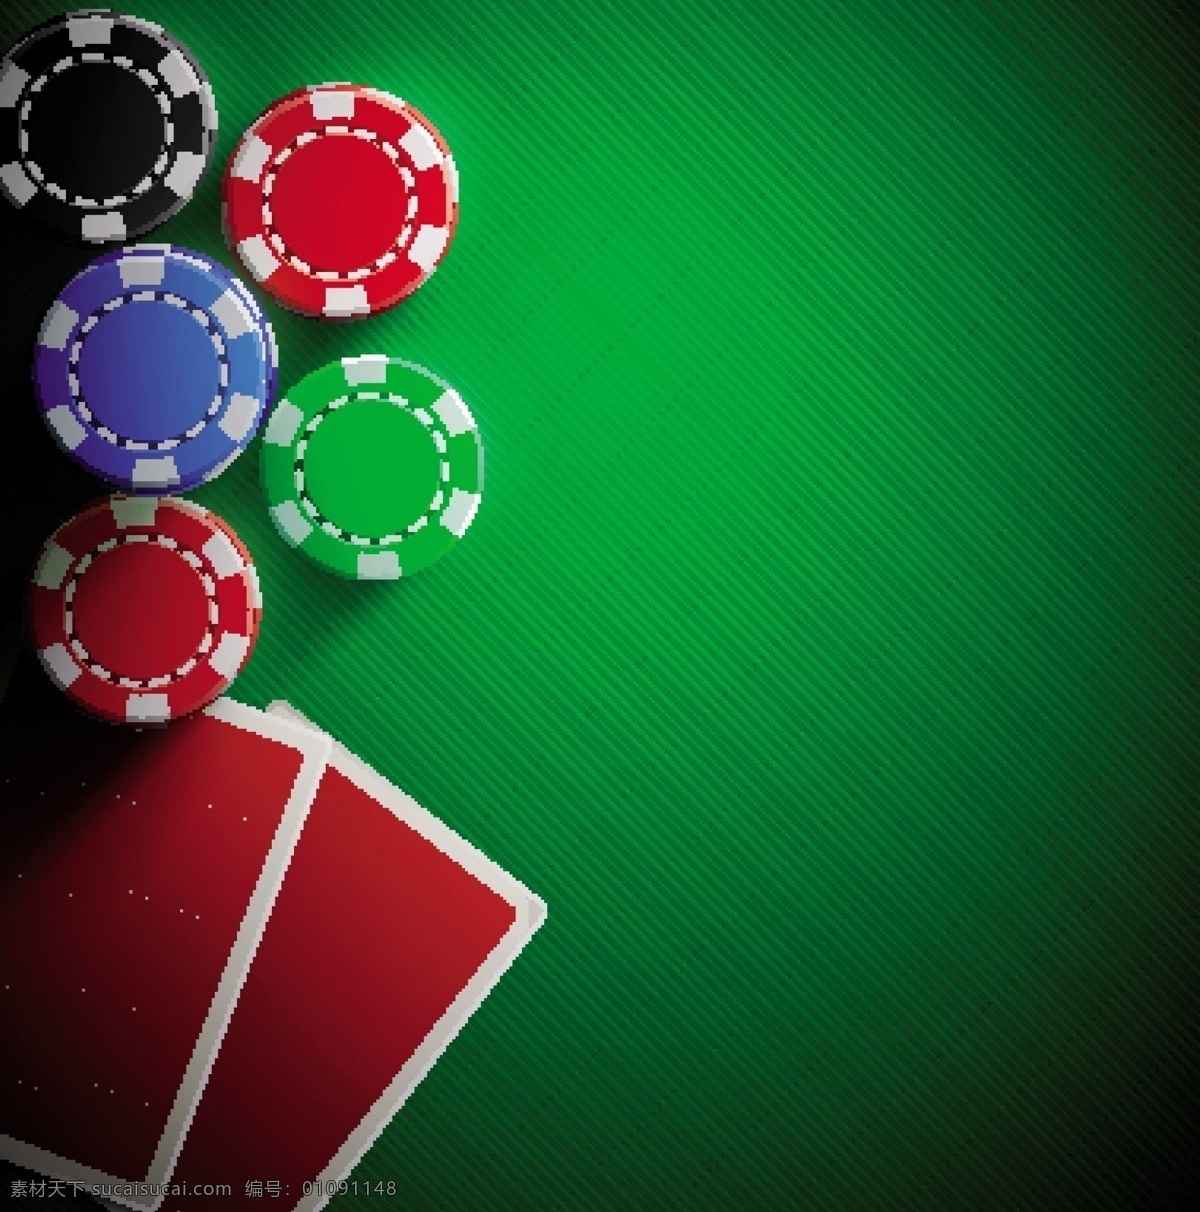 筹码 赌博 赌场 赌桌赌博 赌博筹码 赌博用品 赌具 扑克 展板海报